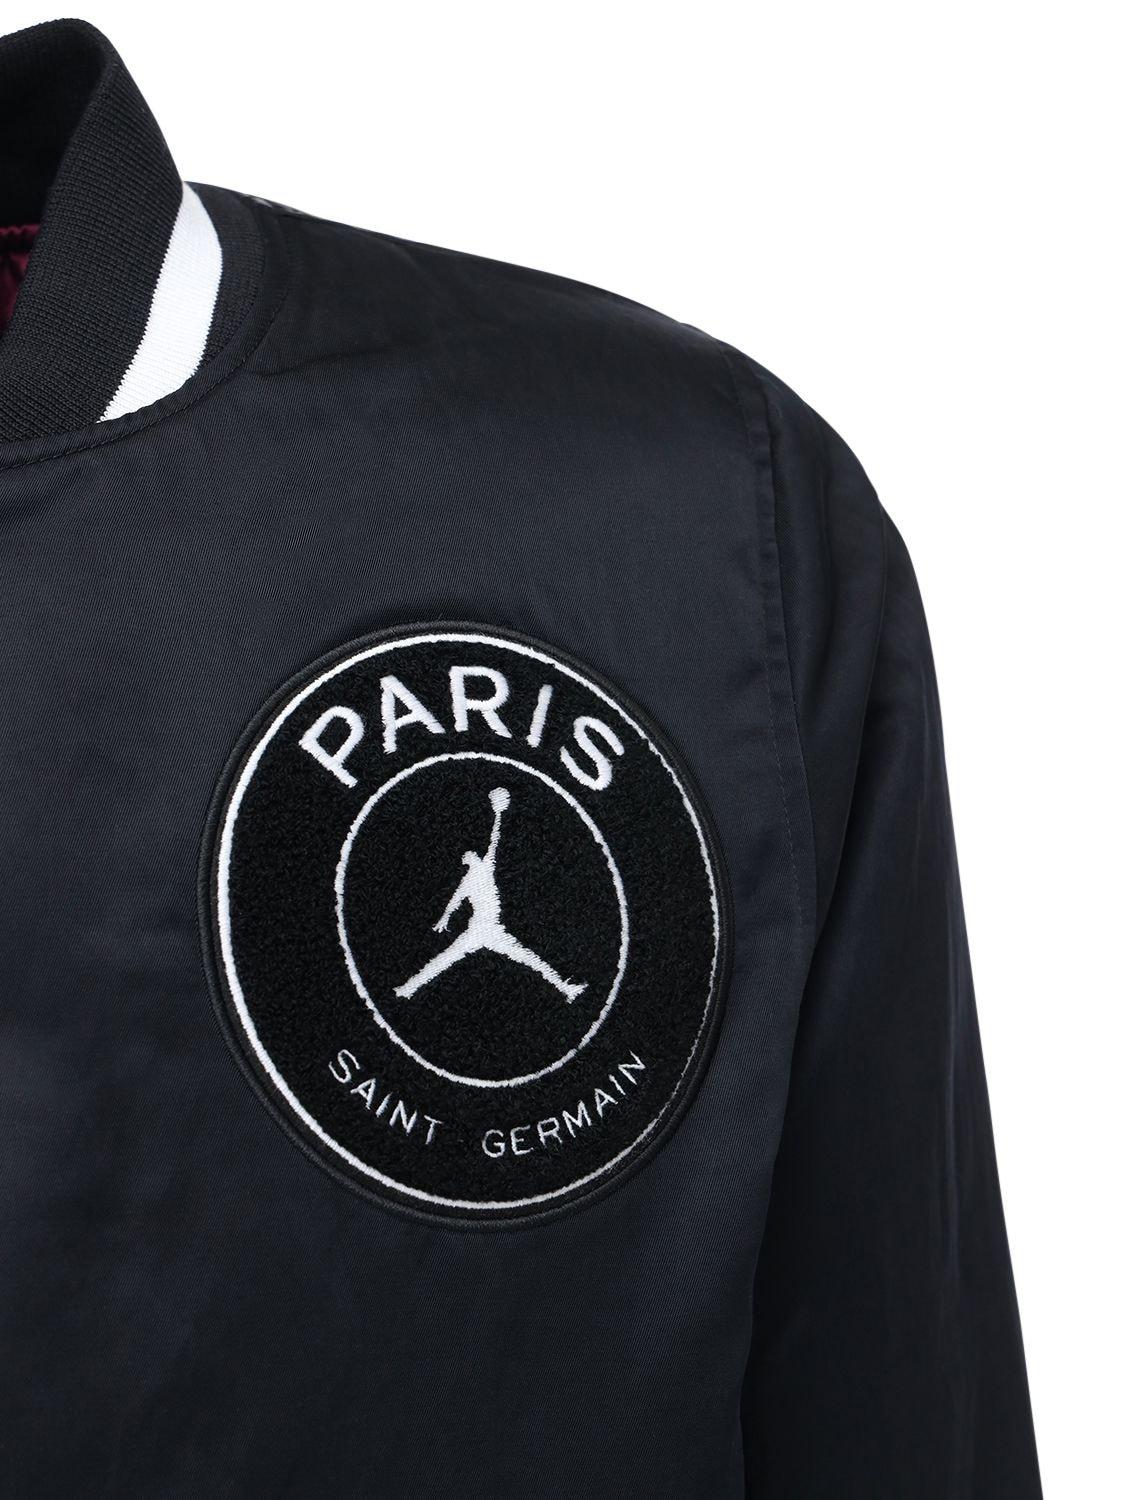 Nike Jordan Psg Padded Varsity Jacket in Black for Men | Lyst